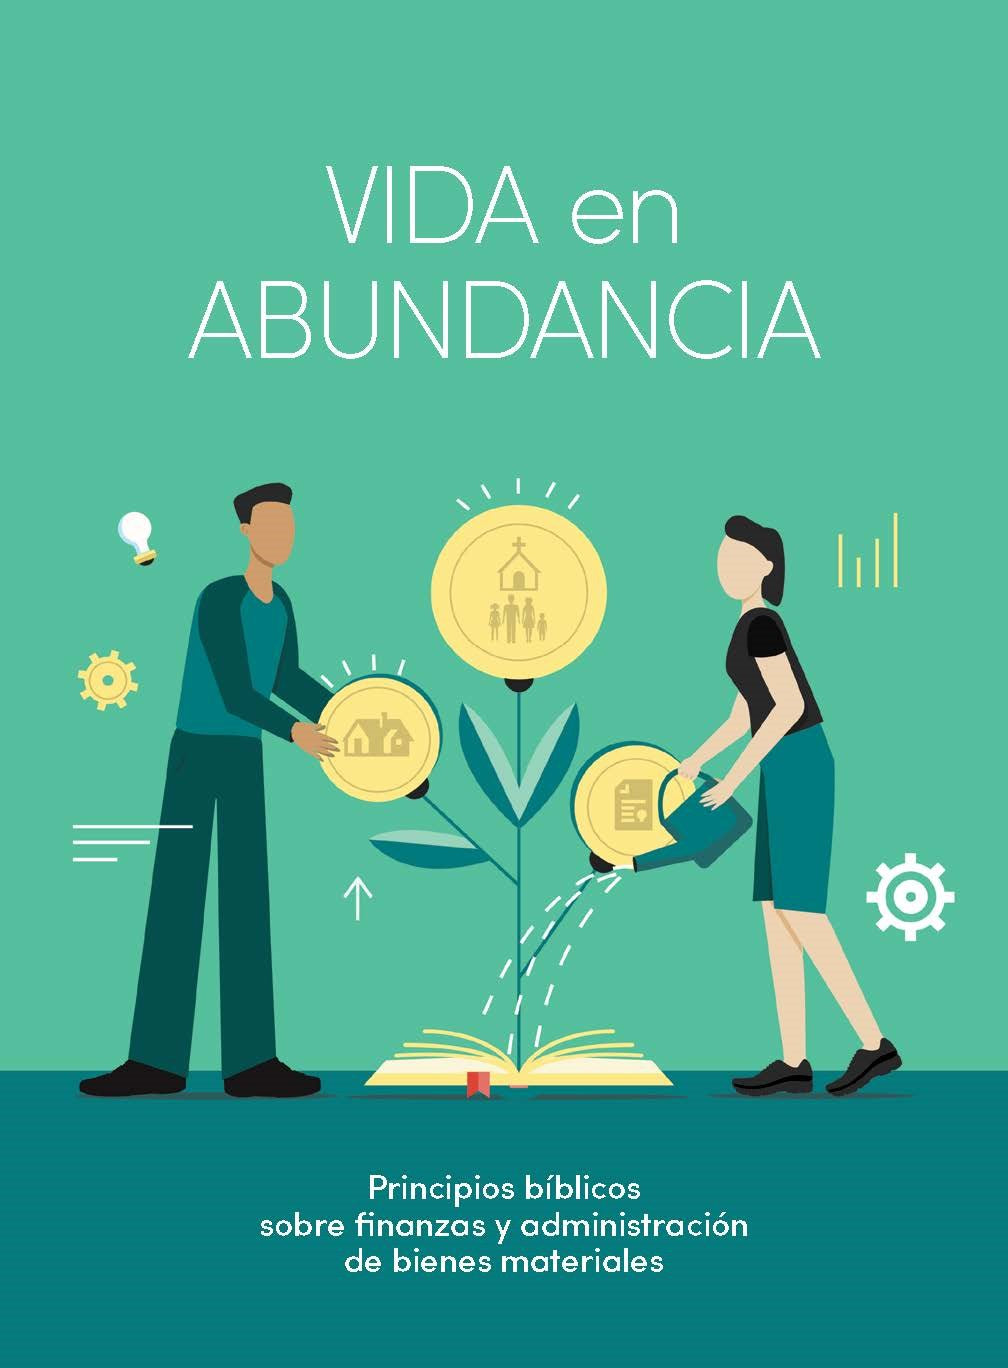 Spanish-Abundant Life (Vida en abundancia)